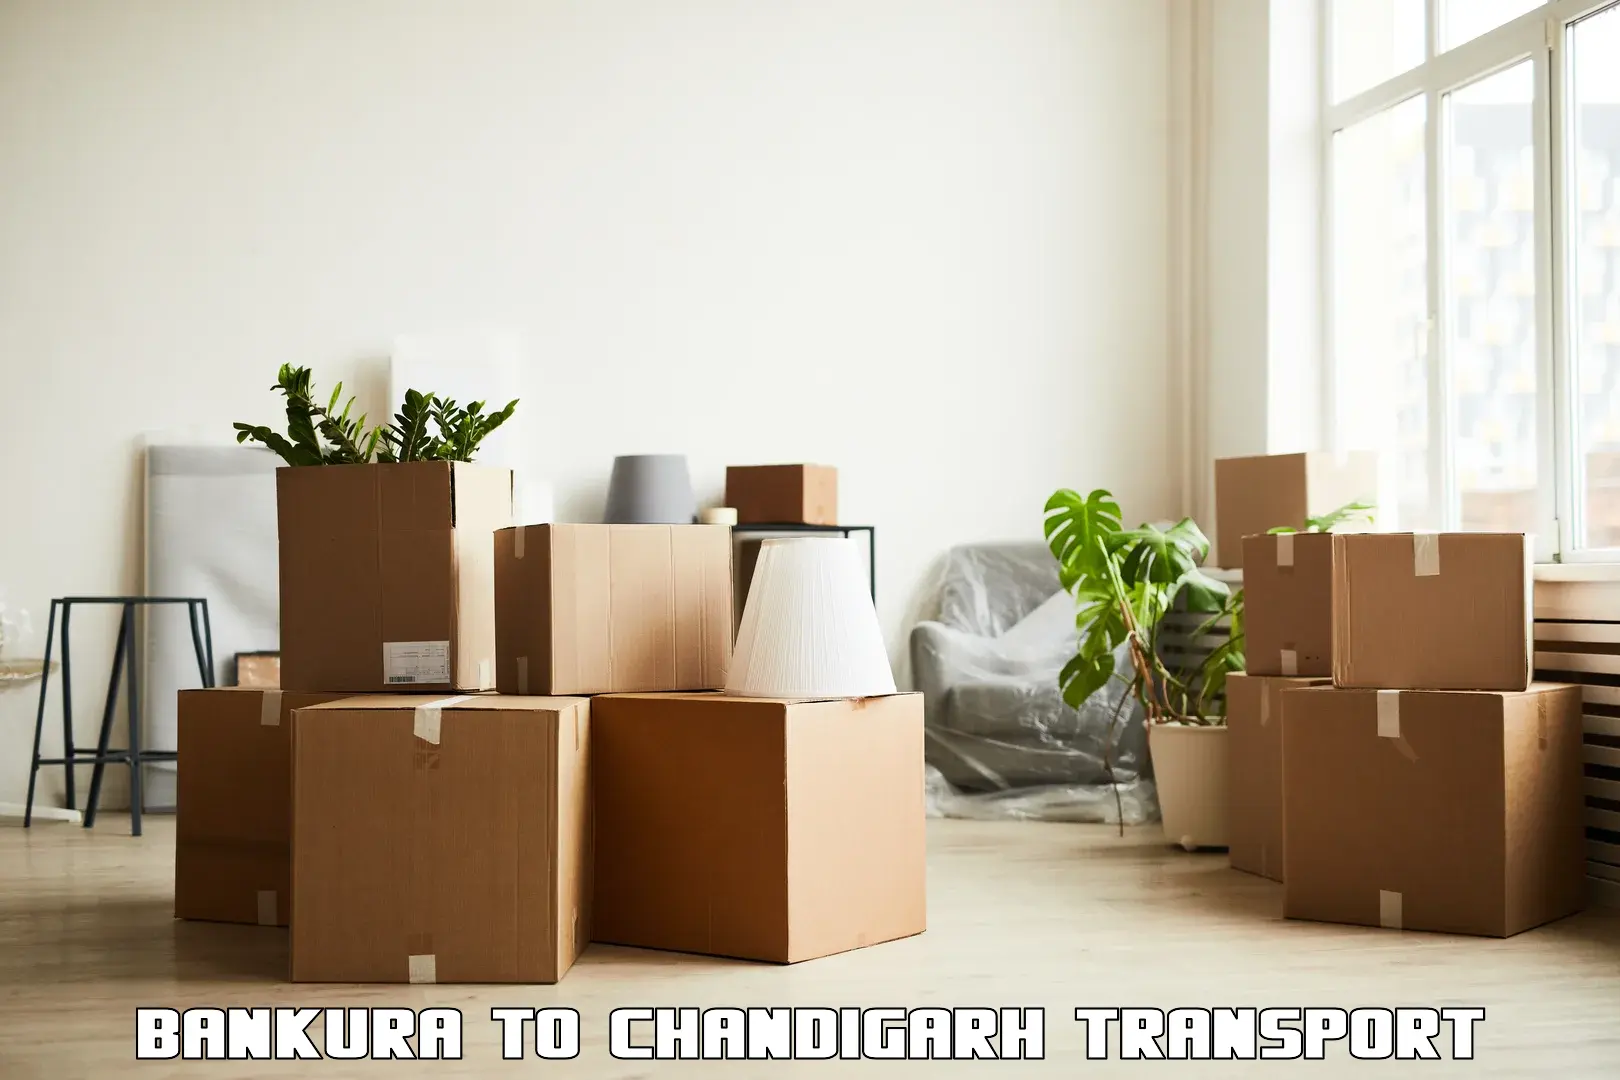 Transport in sharing Bankura to Chandigarh